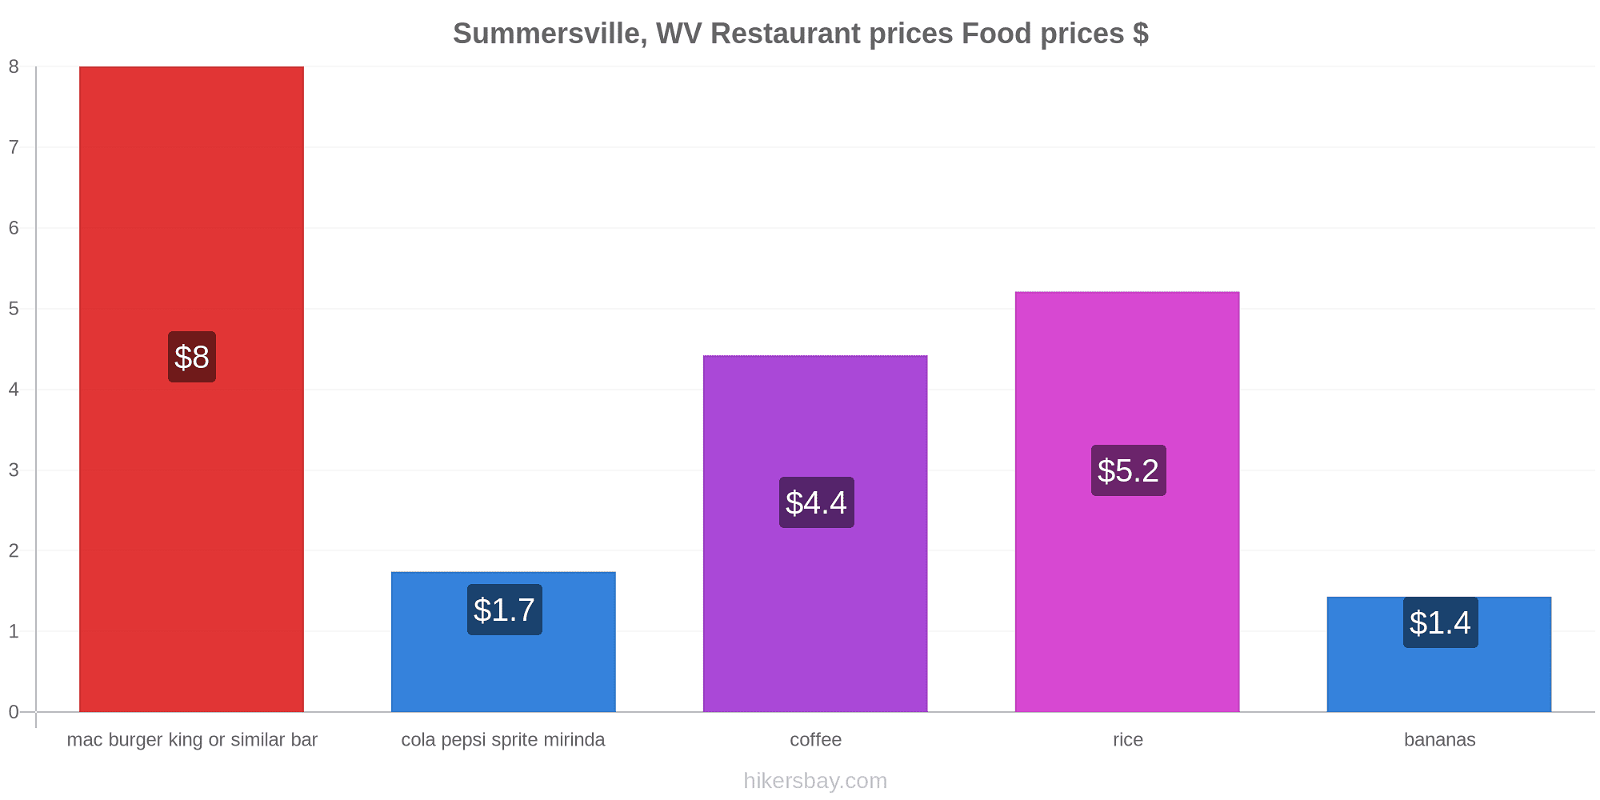 Summersville, WV price changes hikersbay.com